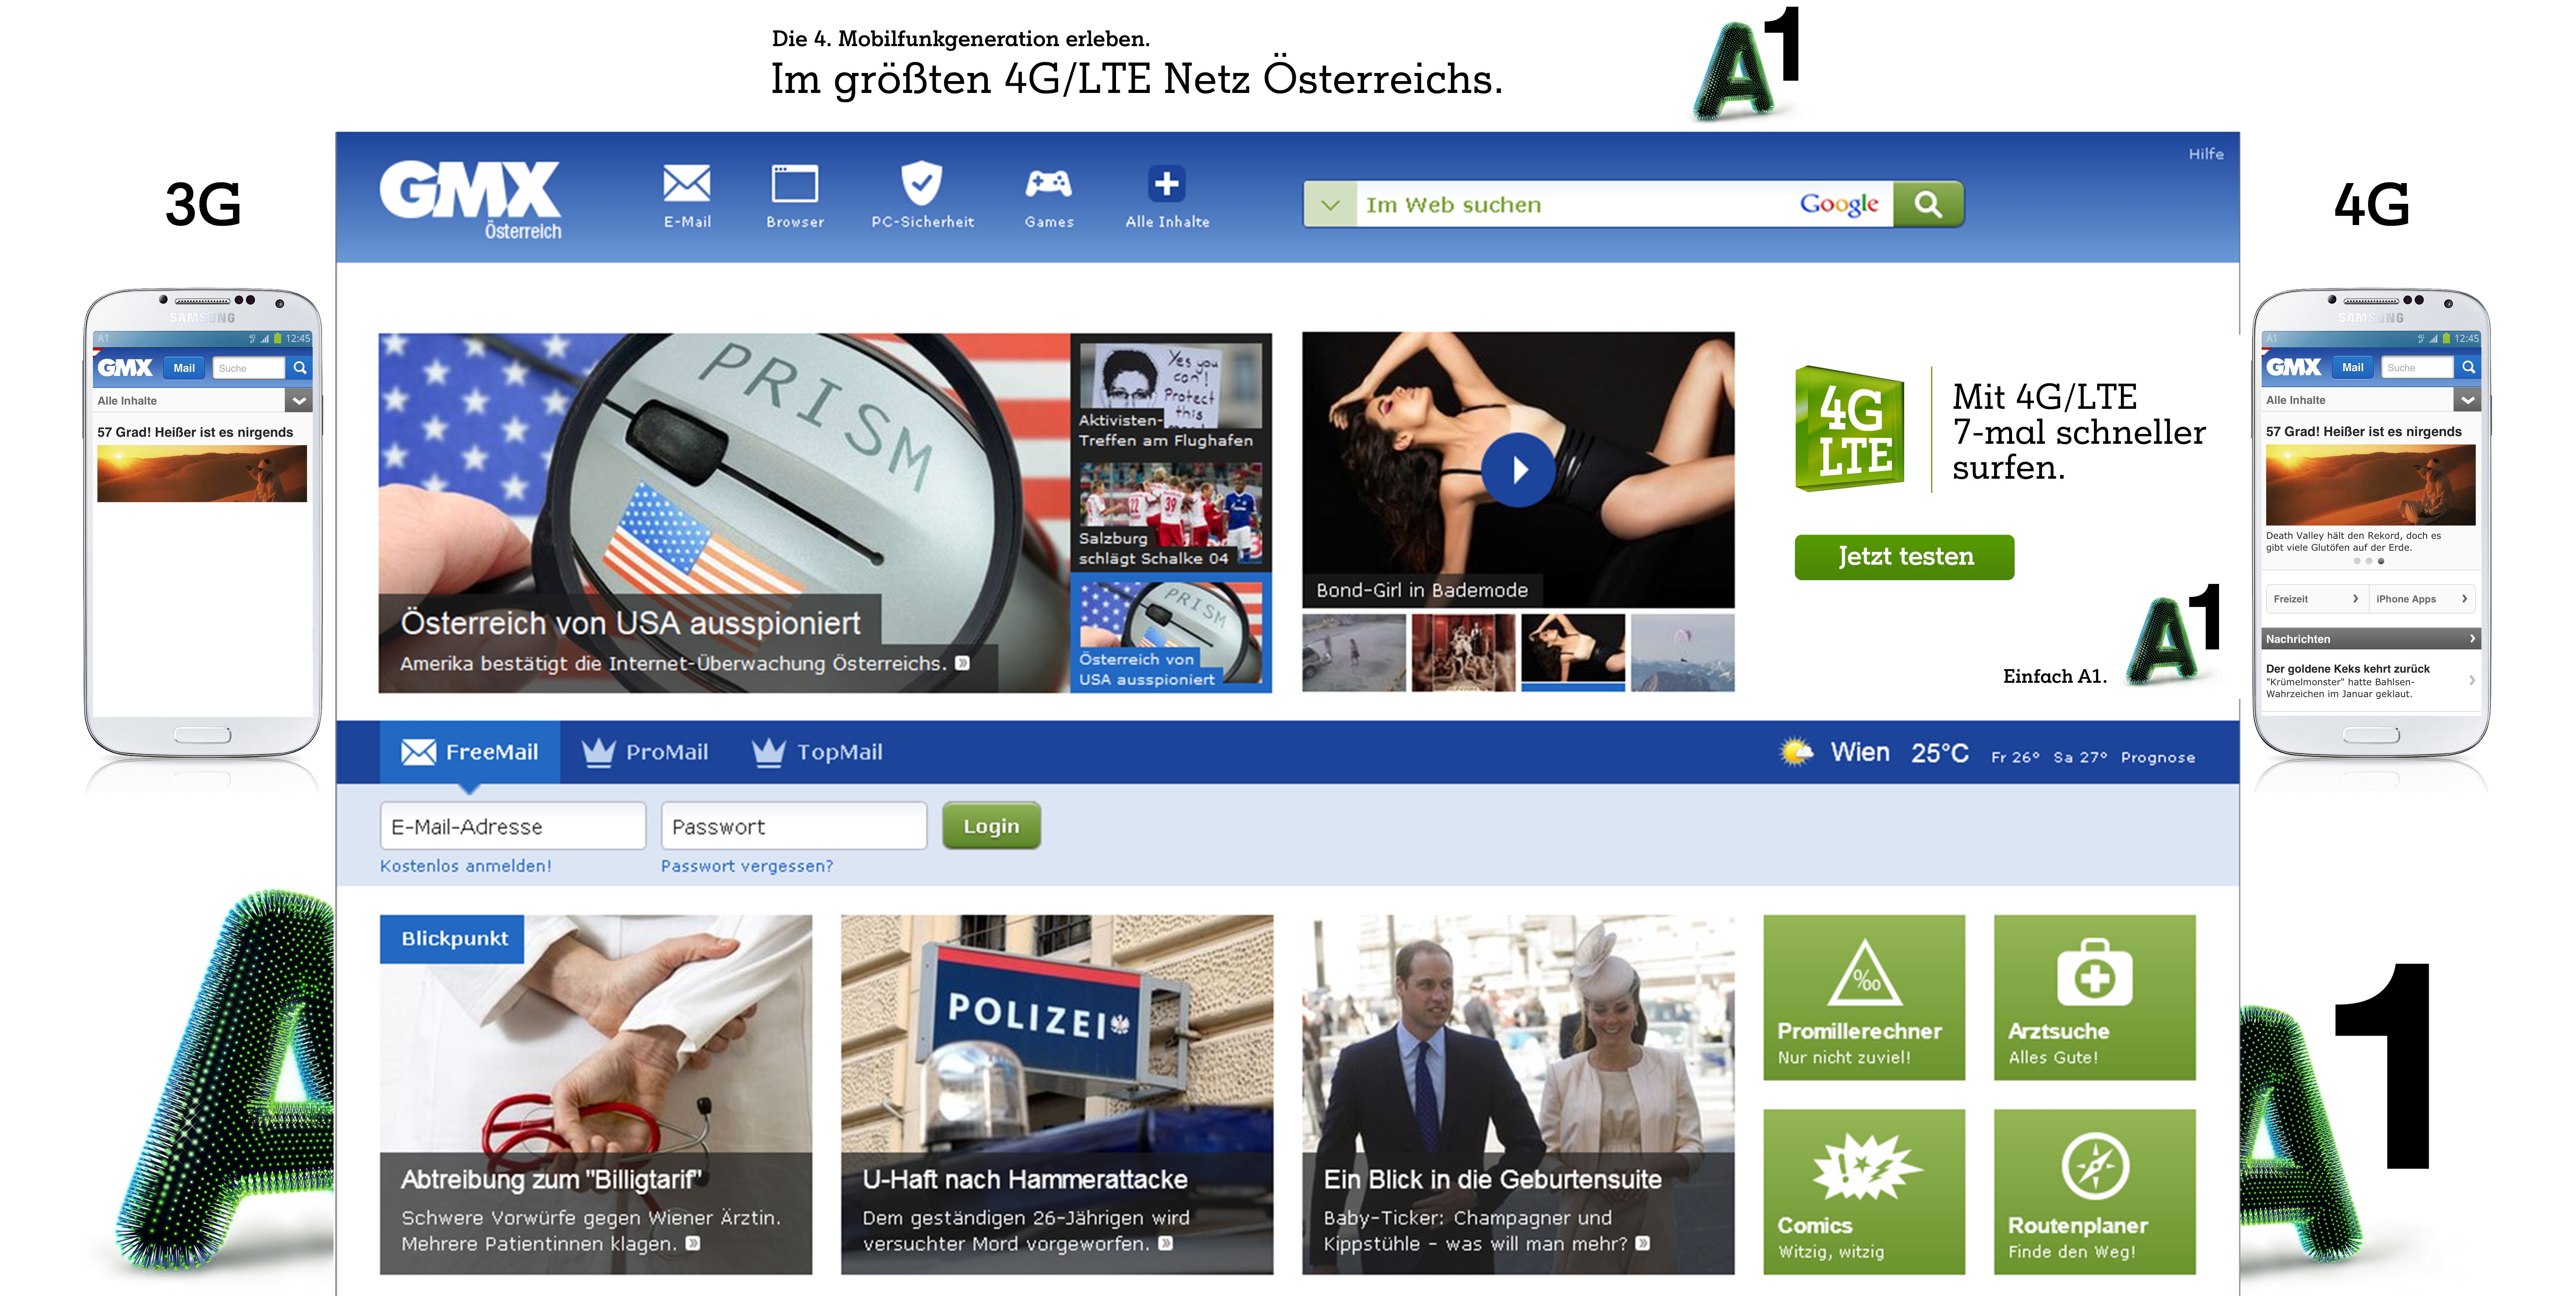 GMX.at präsentiert neue Homepage